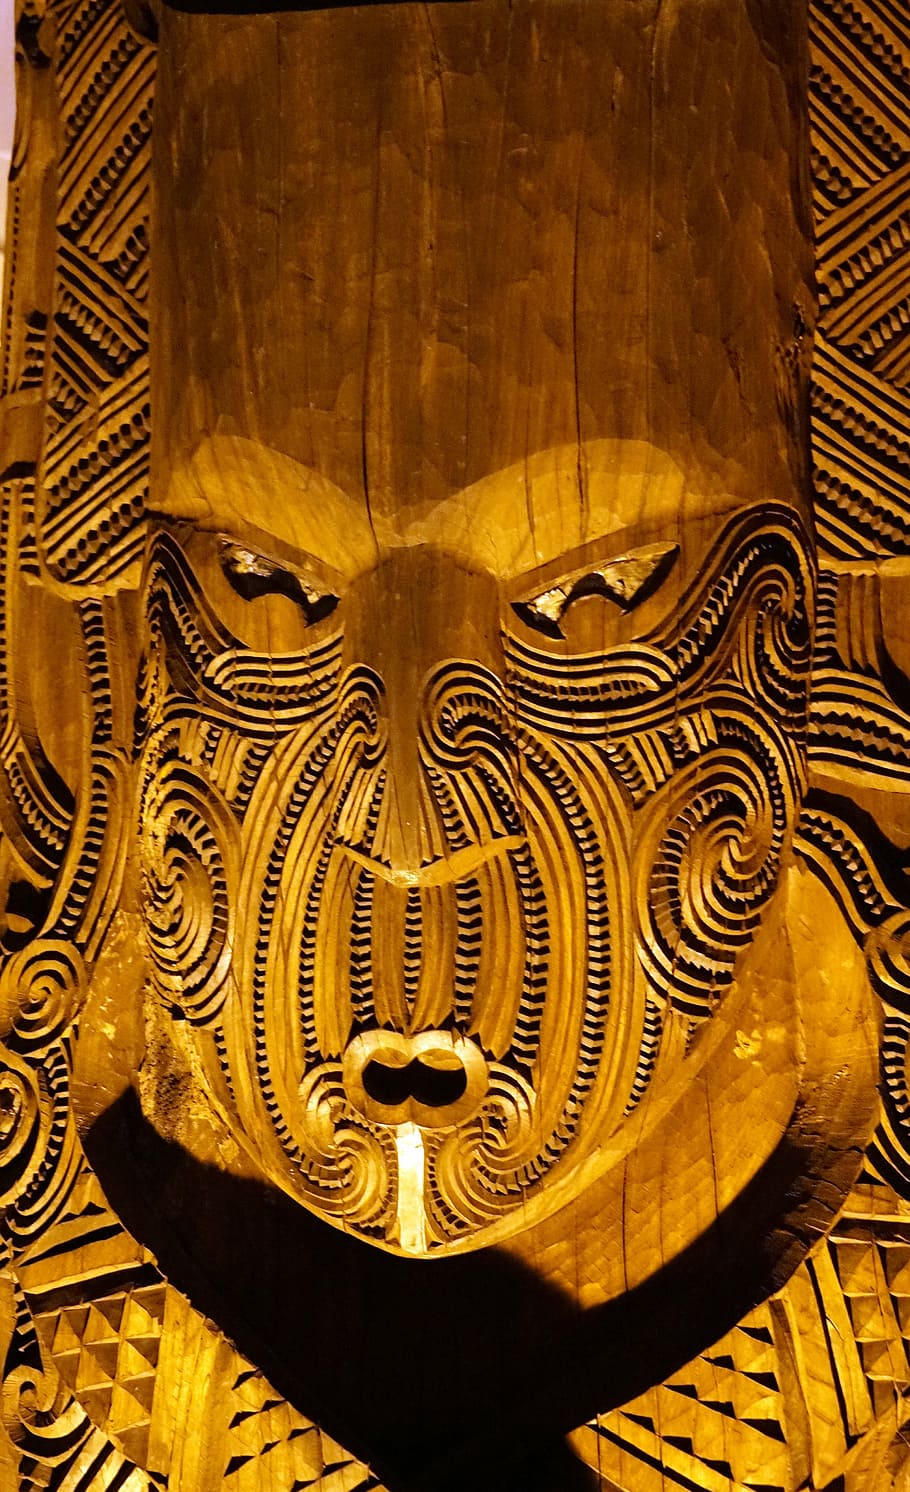 maori figure, carving, figure, arts crafts, holzfigur, new zealand, craft, face, ornament, maori